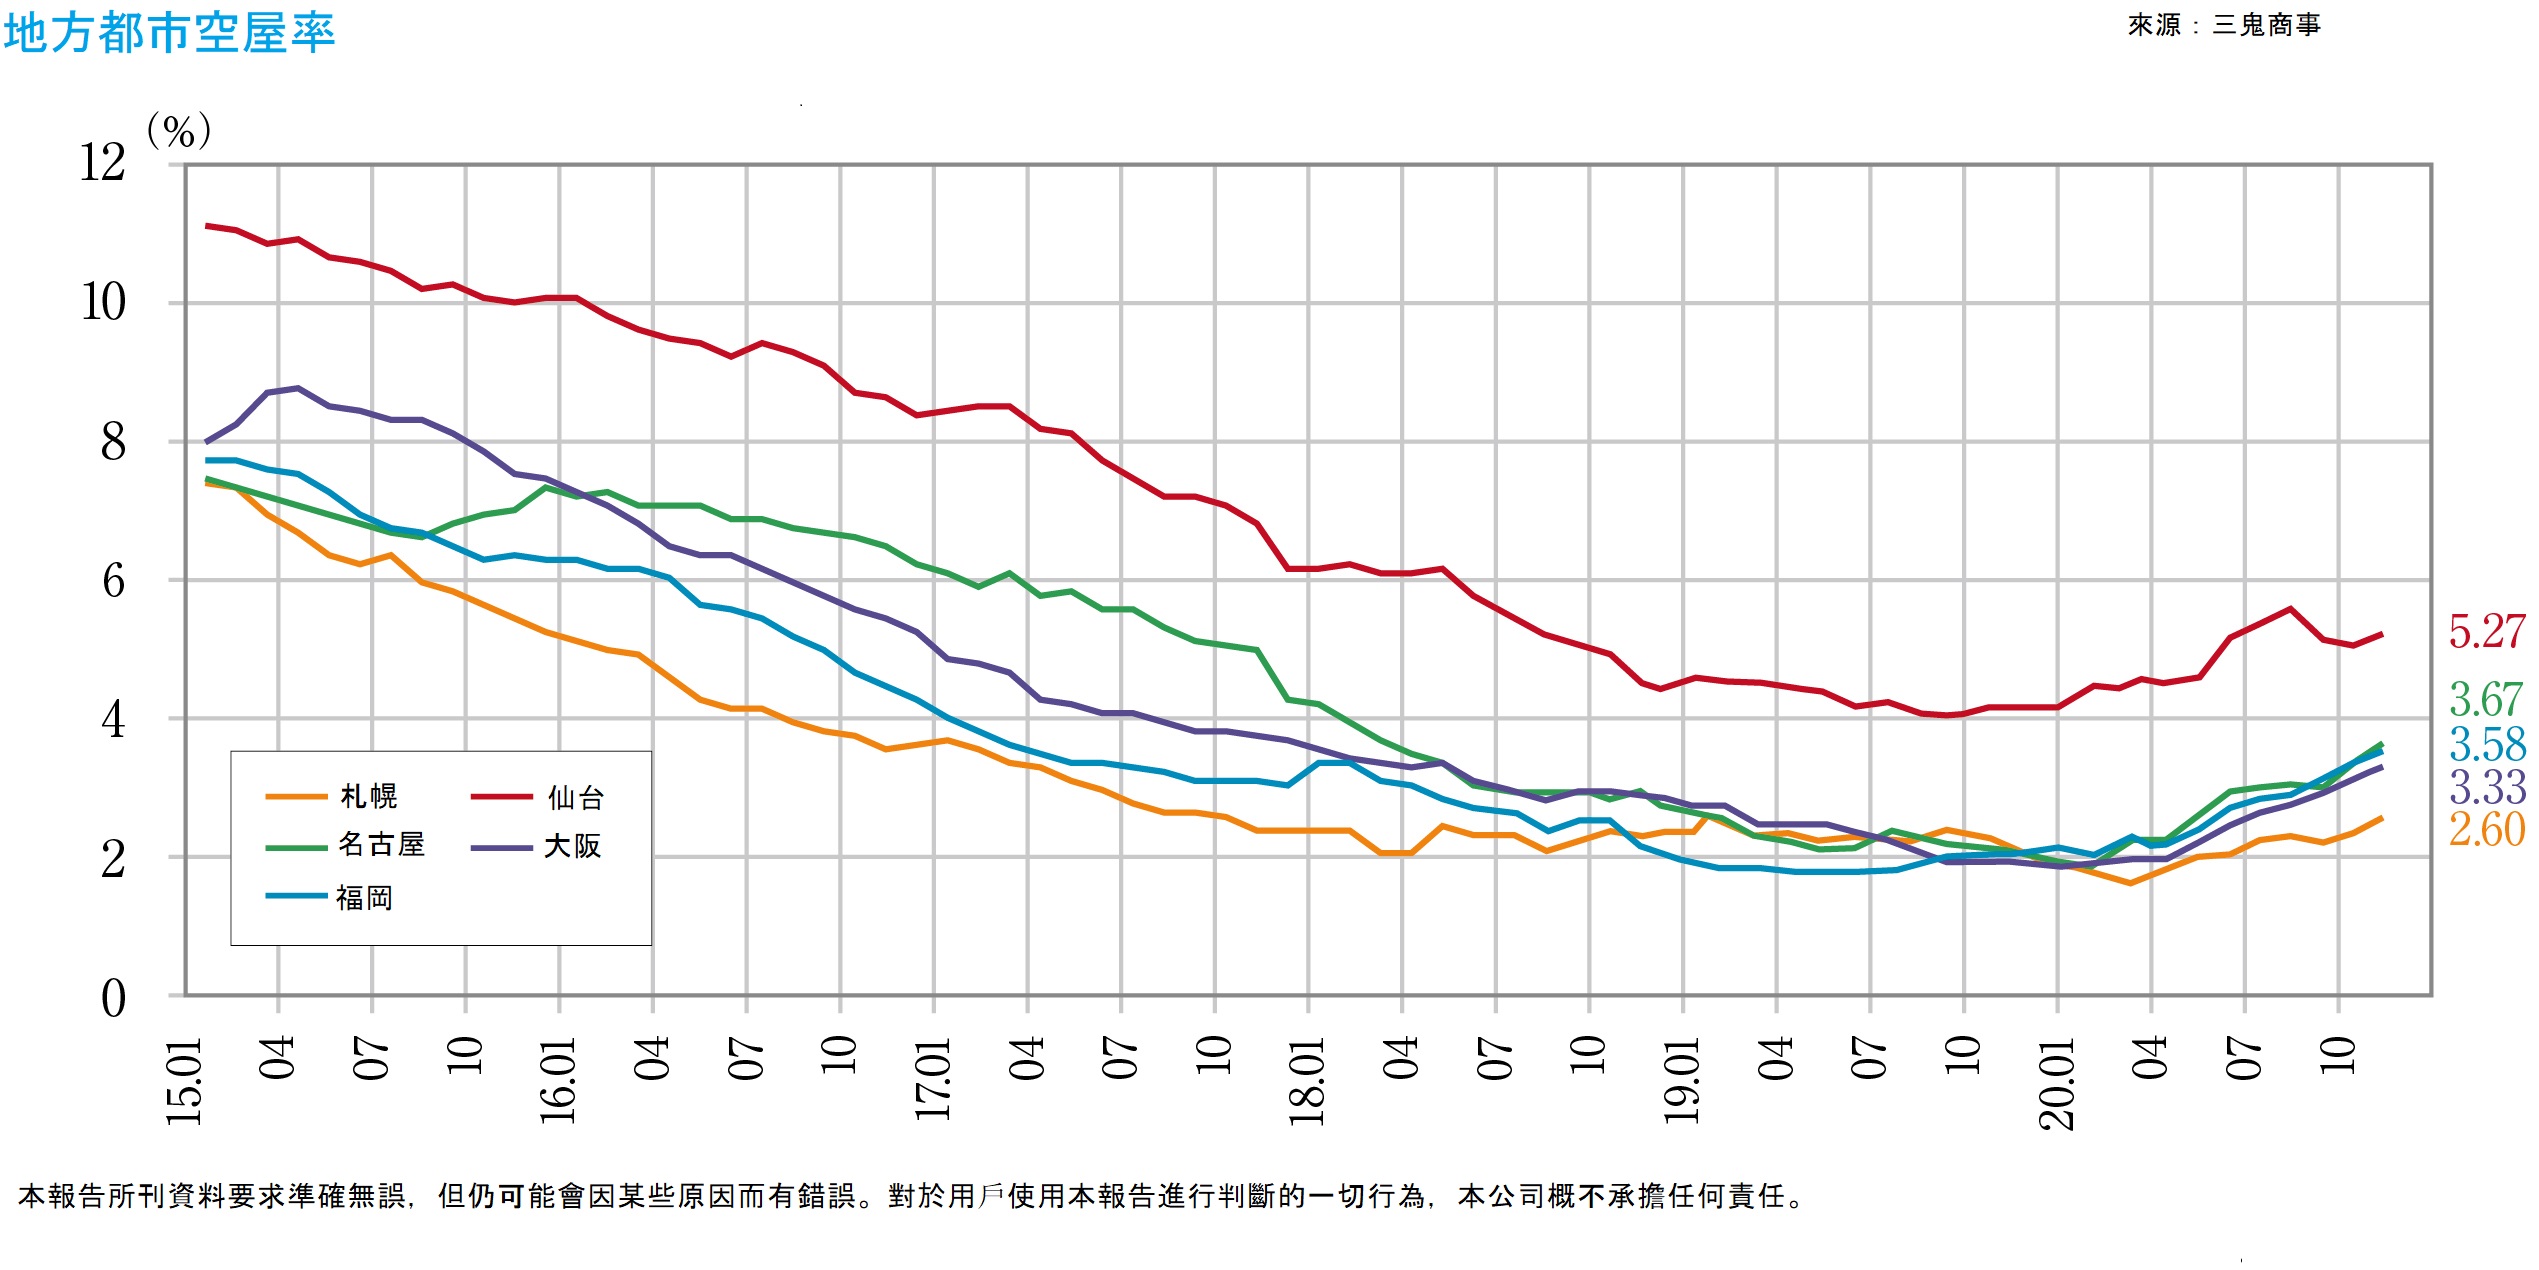 從地方市場來看，2020年10月至12月的空屋率，札幌從2.38%上升至2.66%，仙台從5.10%上升至5.51%，橫濱從3.76%上升至3.85%，名古屋從3.39%上升至3.80%，大阪從3.14%上升至3.44%，福岡從3.40%上升至3.87%，雖然各個地區的空屋率都有略微上升，但與東京都相比，受到新冠疫情的影響相對較小。在平均每坪的租金方面，札幌從9,430日元上升至9,468日元，仙台從9,337日元下降至9,316日元，橫濱從12,249日元上升至12,271日元，名古屋從11,836日元下降至11,819日元，大阪從11,928日元下降至11,925日元，福岡從11,028日元上升至11,086日元，札幌、橫濱和福岡上升，仙台、名古屋和大阪下降，但波動範圍很小。 由於新冠病毒傳染的拡大，在各地區都可見遠距工作、總部功能的地方轉移和分散等工作方式改革的影響，使得東京市中心的市場外流，與此相對的地方市場接收此部分的流出市場，形成了鮮明對比。 在東京市中心，由於遠距工作比例增加，特別是在日益推進ICT的大公司中，不再使用的辦公室樓層面積正在增加。最近出現了一些大企業通過出售自己的公司大樓、出租不再使用的部分，來精簡辦公空間。 許多企業趁著會計年度結束的3月份申請解約，同時也由於2020年夏季後申請了解約的企業將會搬遷，因此未來東京市中心空屋率的上升將是不可避免的。儘管在這種情況下，東京市中心仍有許多計劃新建的大型辦公樓。根據CBRE最近發佈的文件中，預計2023年將新投入建造建築面積在2,000坪以上的大型建築15棟、約68萬坪的辦公空間。 至今為止，此級別（大型）每年供應40萬坪就被認為是“很多了”，在預計工人數量今後將繼續減少的情況下，東京市中心的辦公樓市場將面臨一個重大轉折點，將需持續採取措施來增加需求。